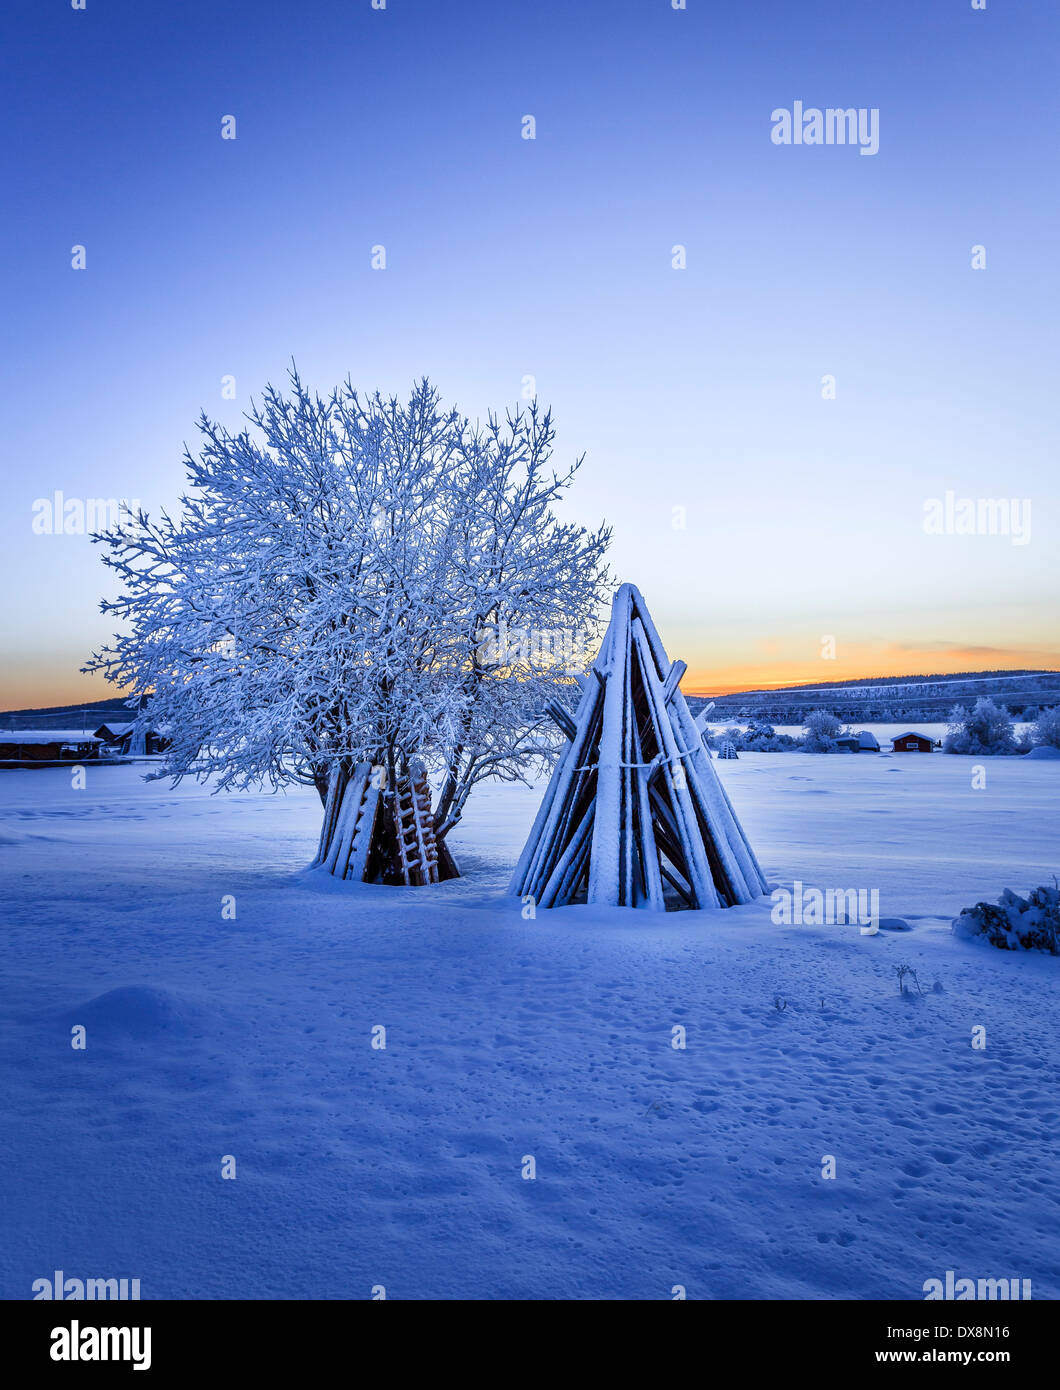 Bois empilés et un arbre couvert de neige à des températures extrêmement froides, Laponie, Suède Banque D'Images